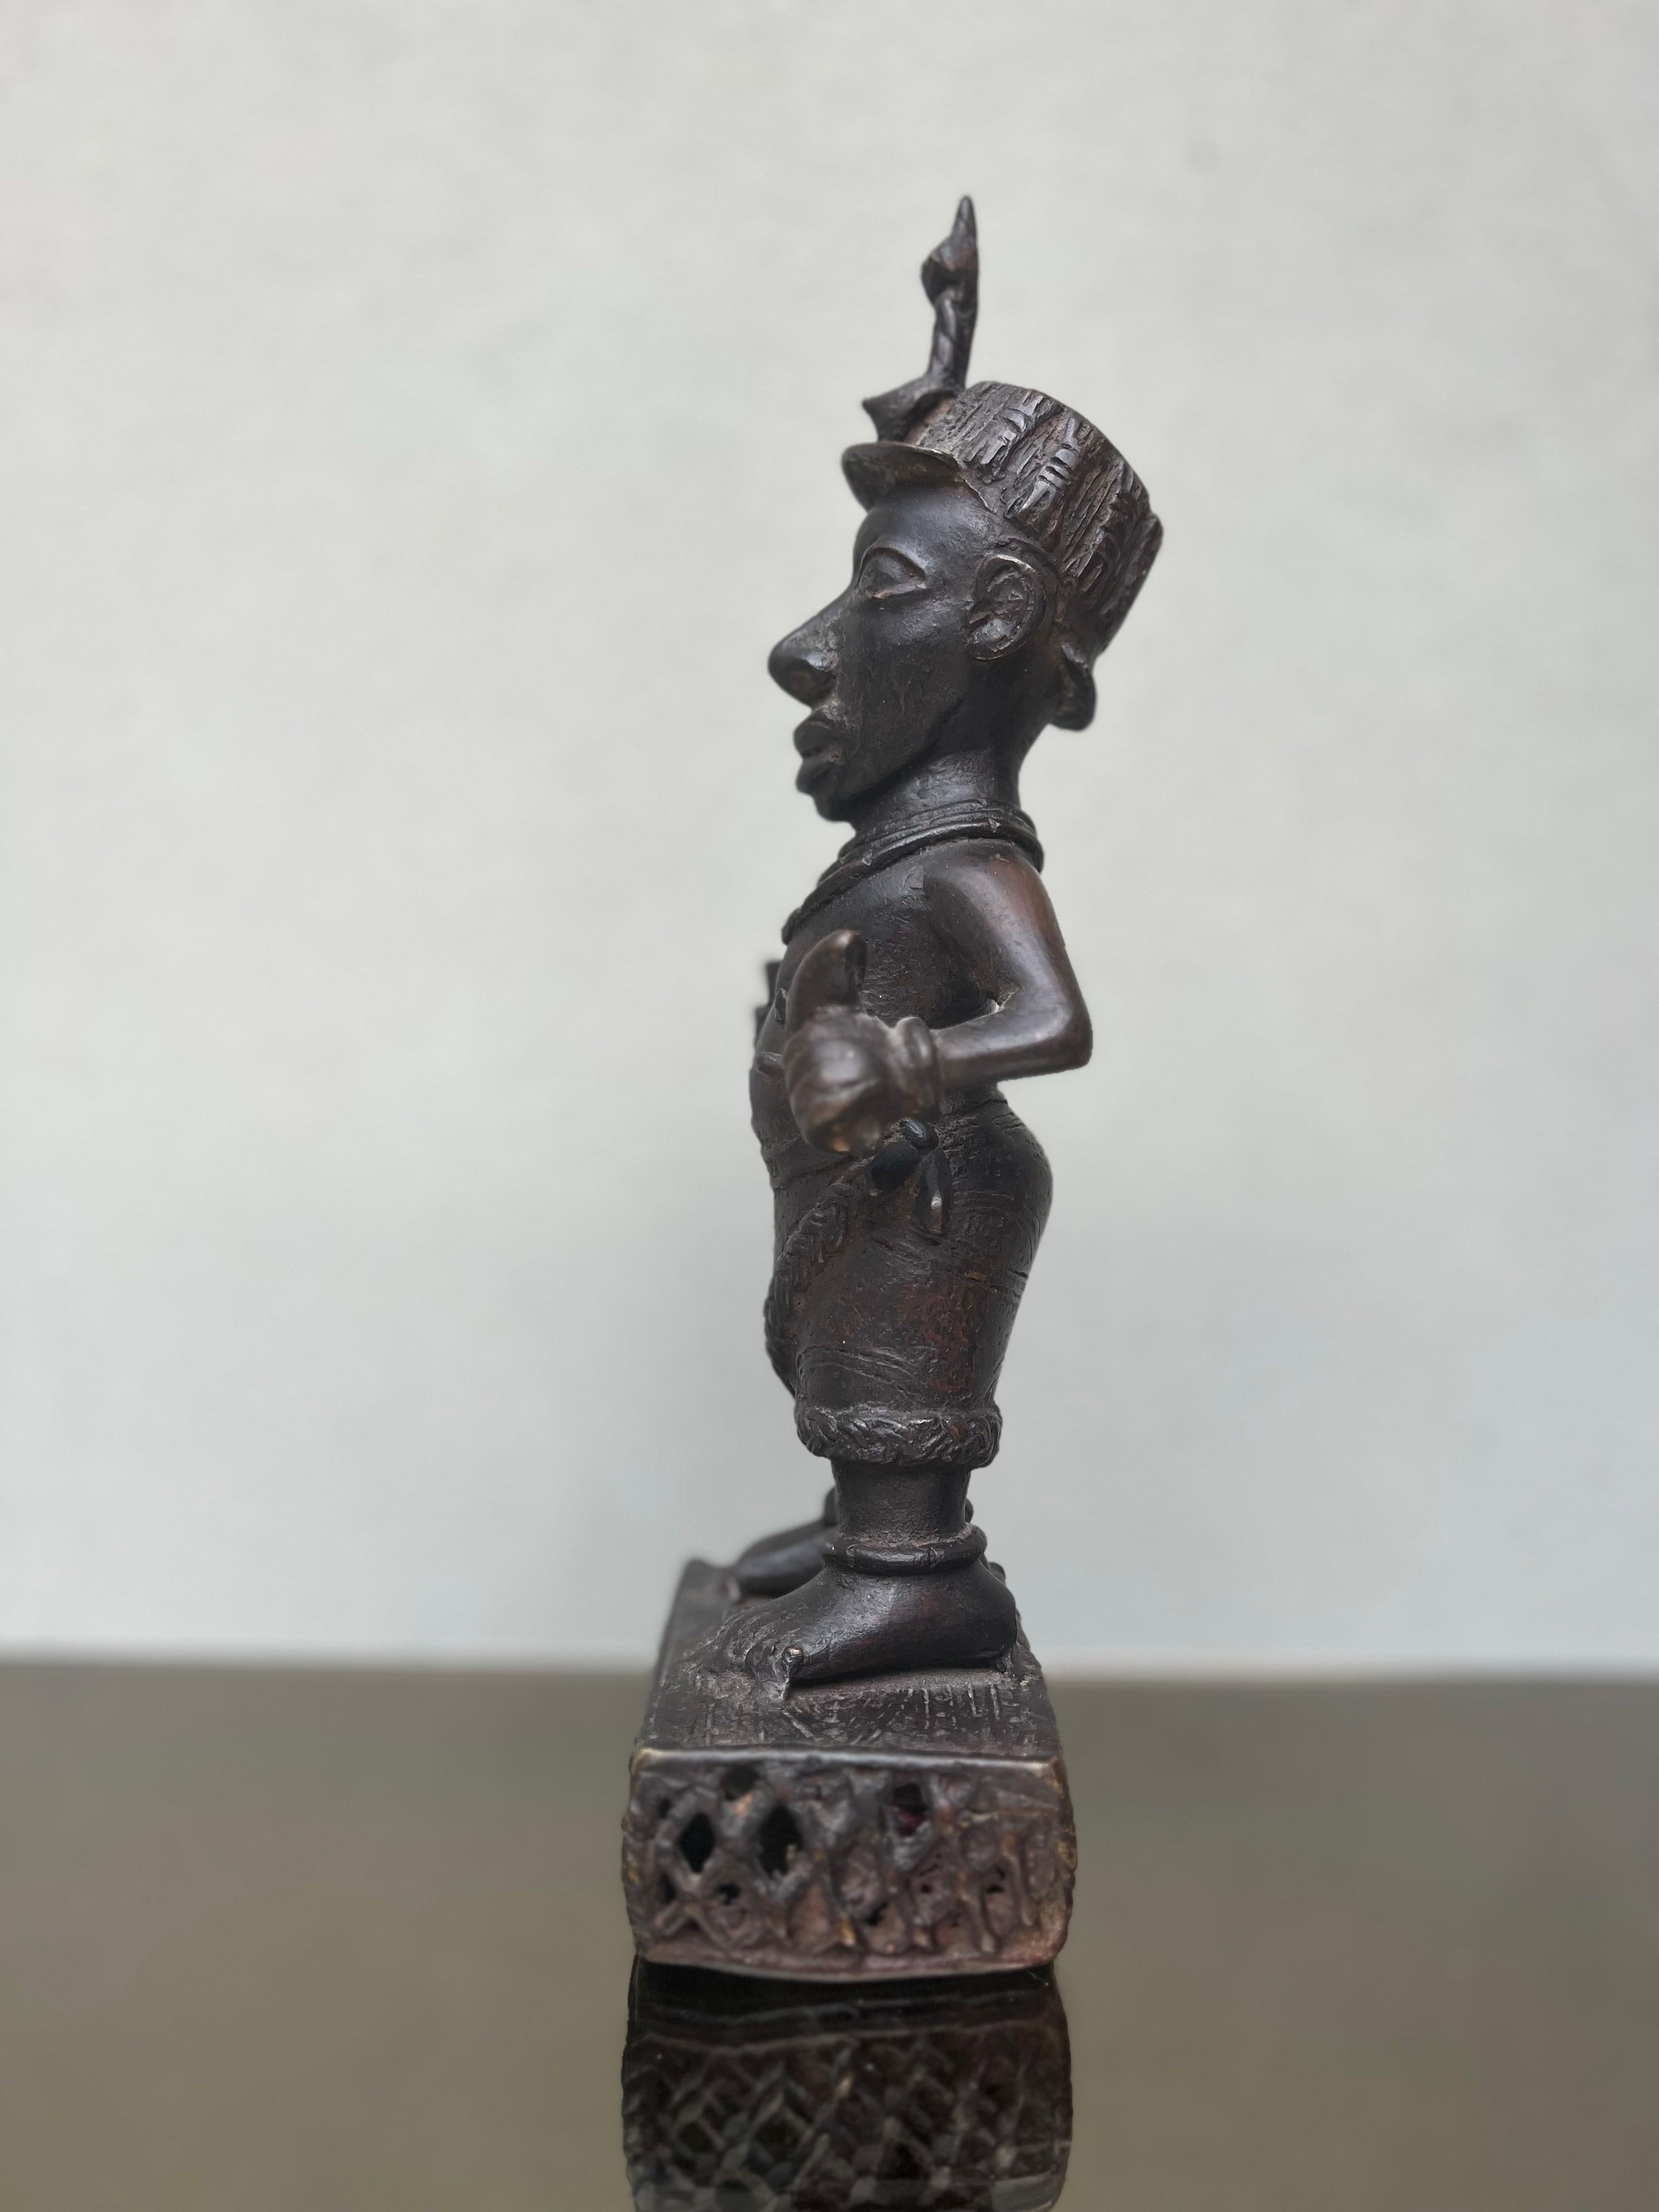 Antica scultura - bronzo - africana - Benin - XIX secolo
Descrizione

Antica Scultura in bronzo africana di una raffigurazione del Re Coronato Ife Malu, originaria del Benin del XIX secolo

Produzione: Benin

Periodo: XIX secolo

Materiale: